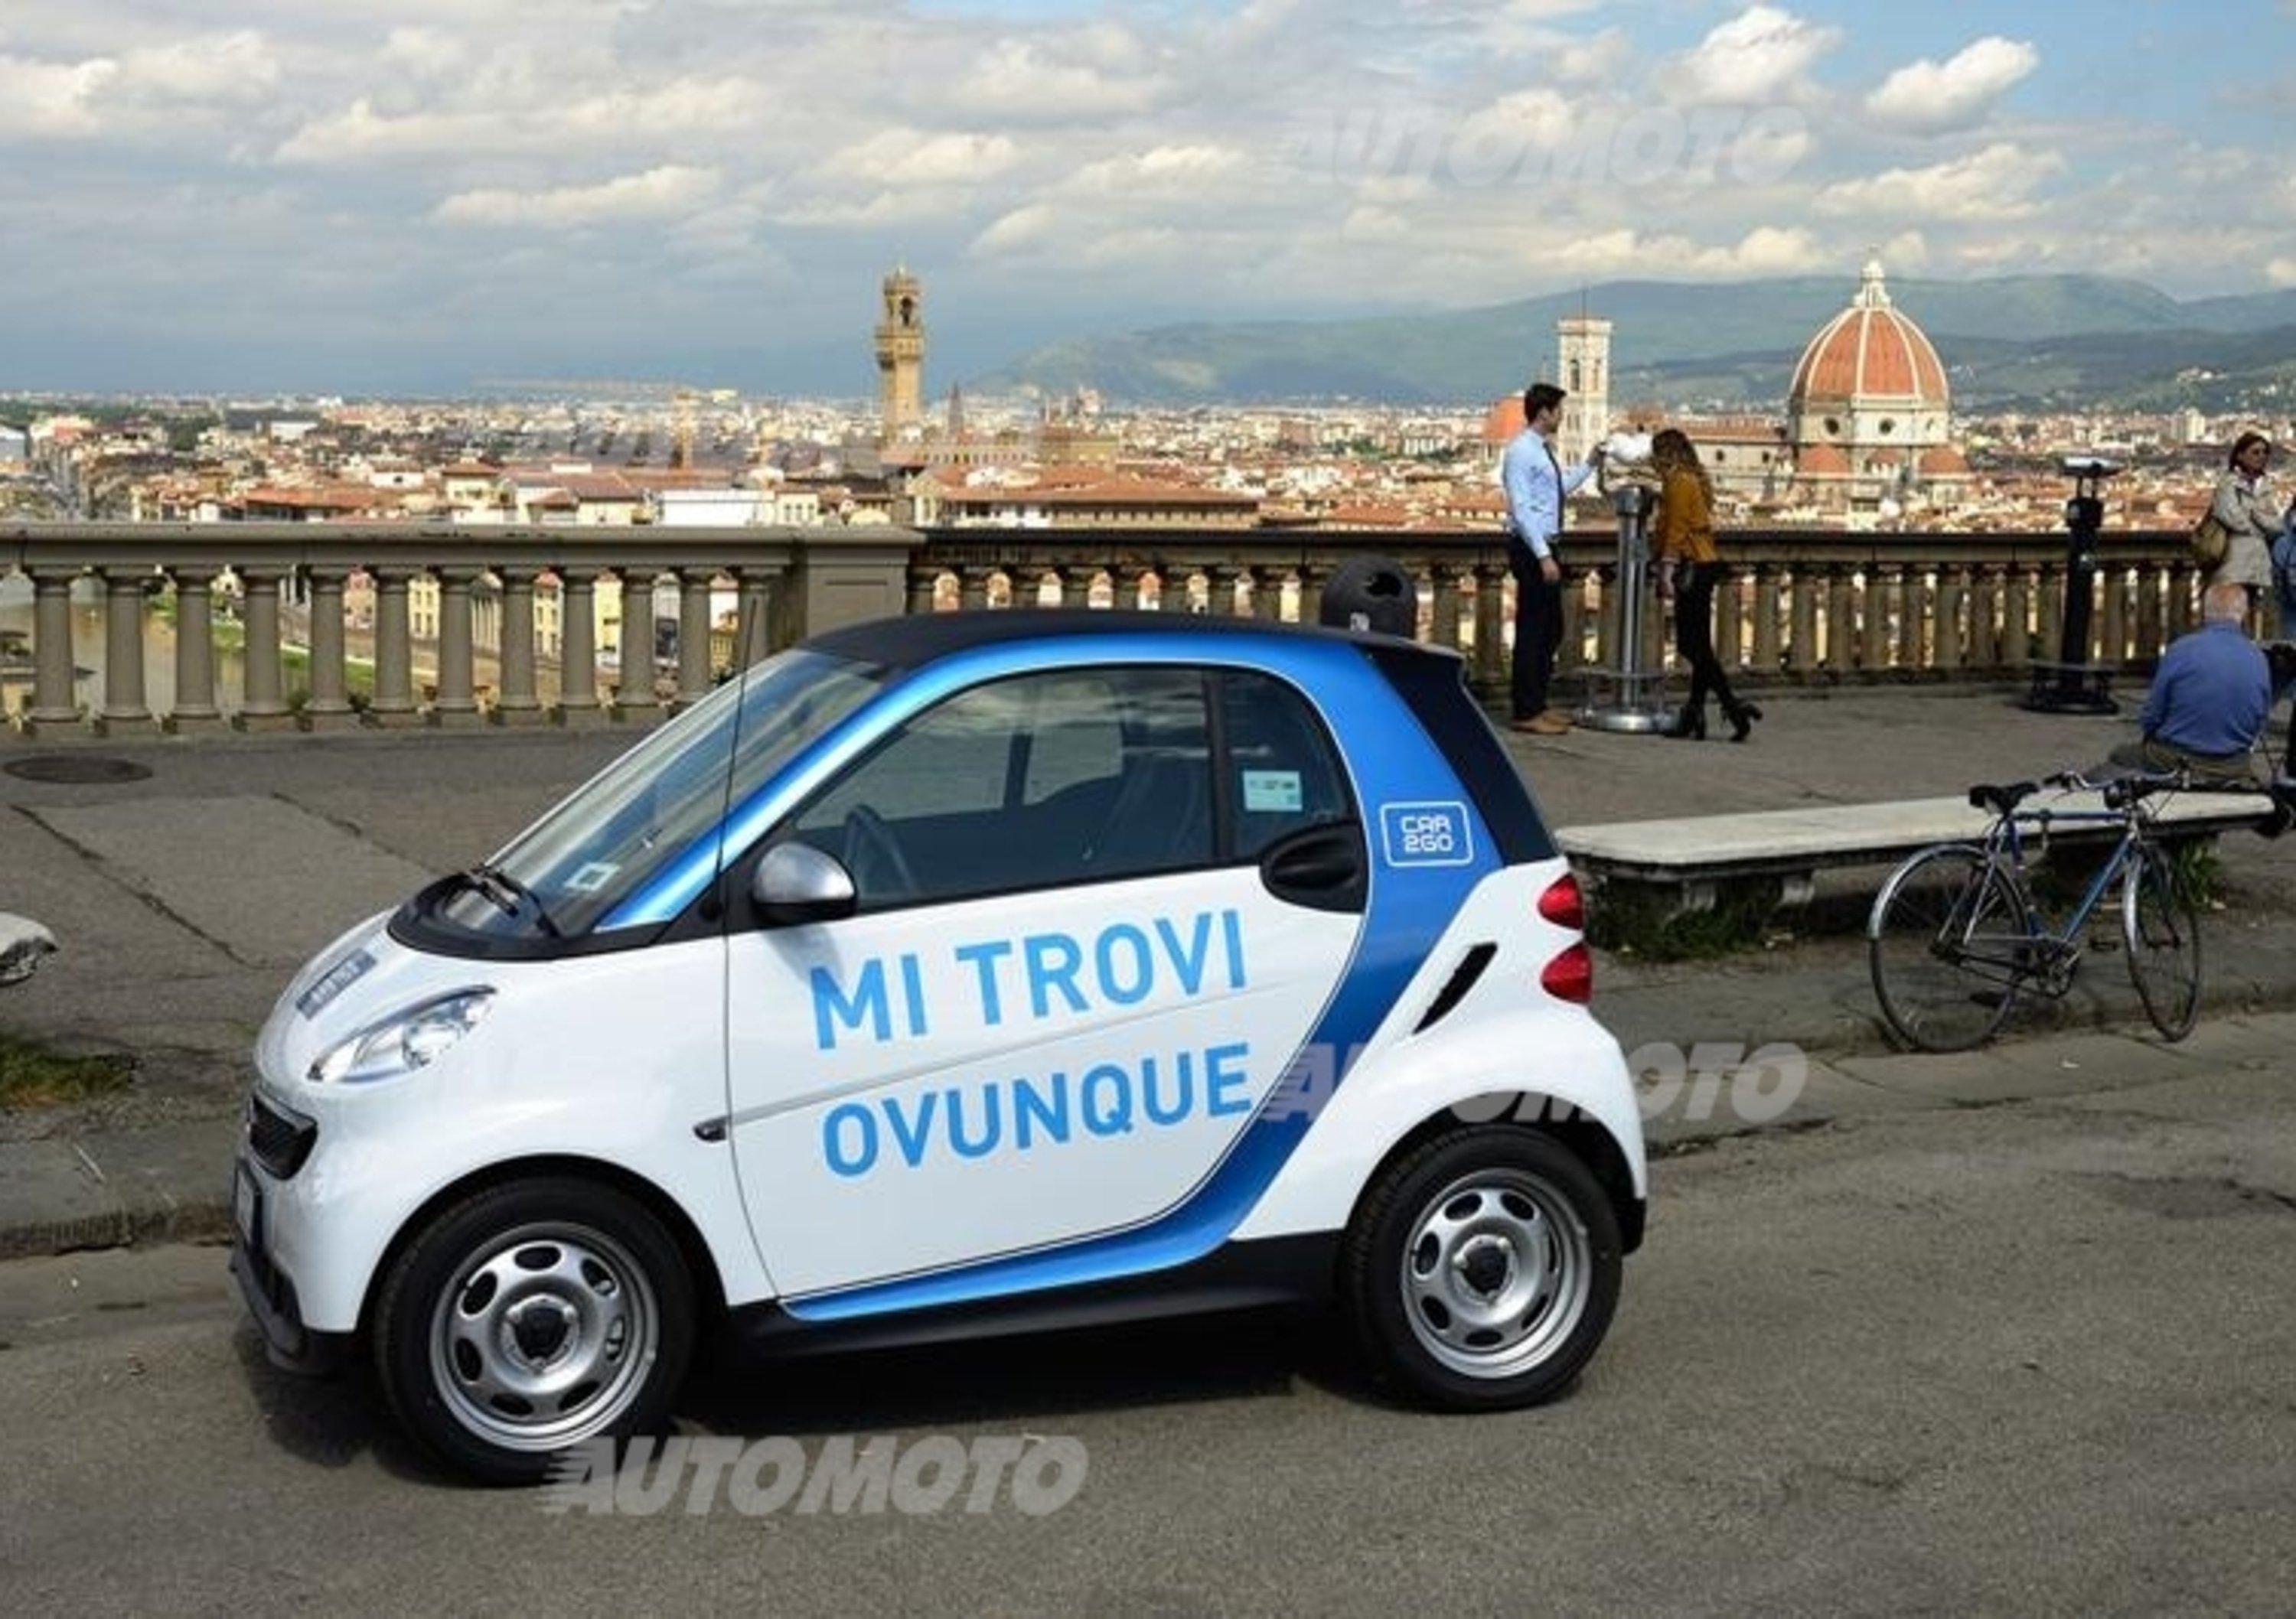 car2go raggiunge 2 milioni di noleggi dopo un anno in Italia